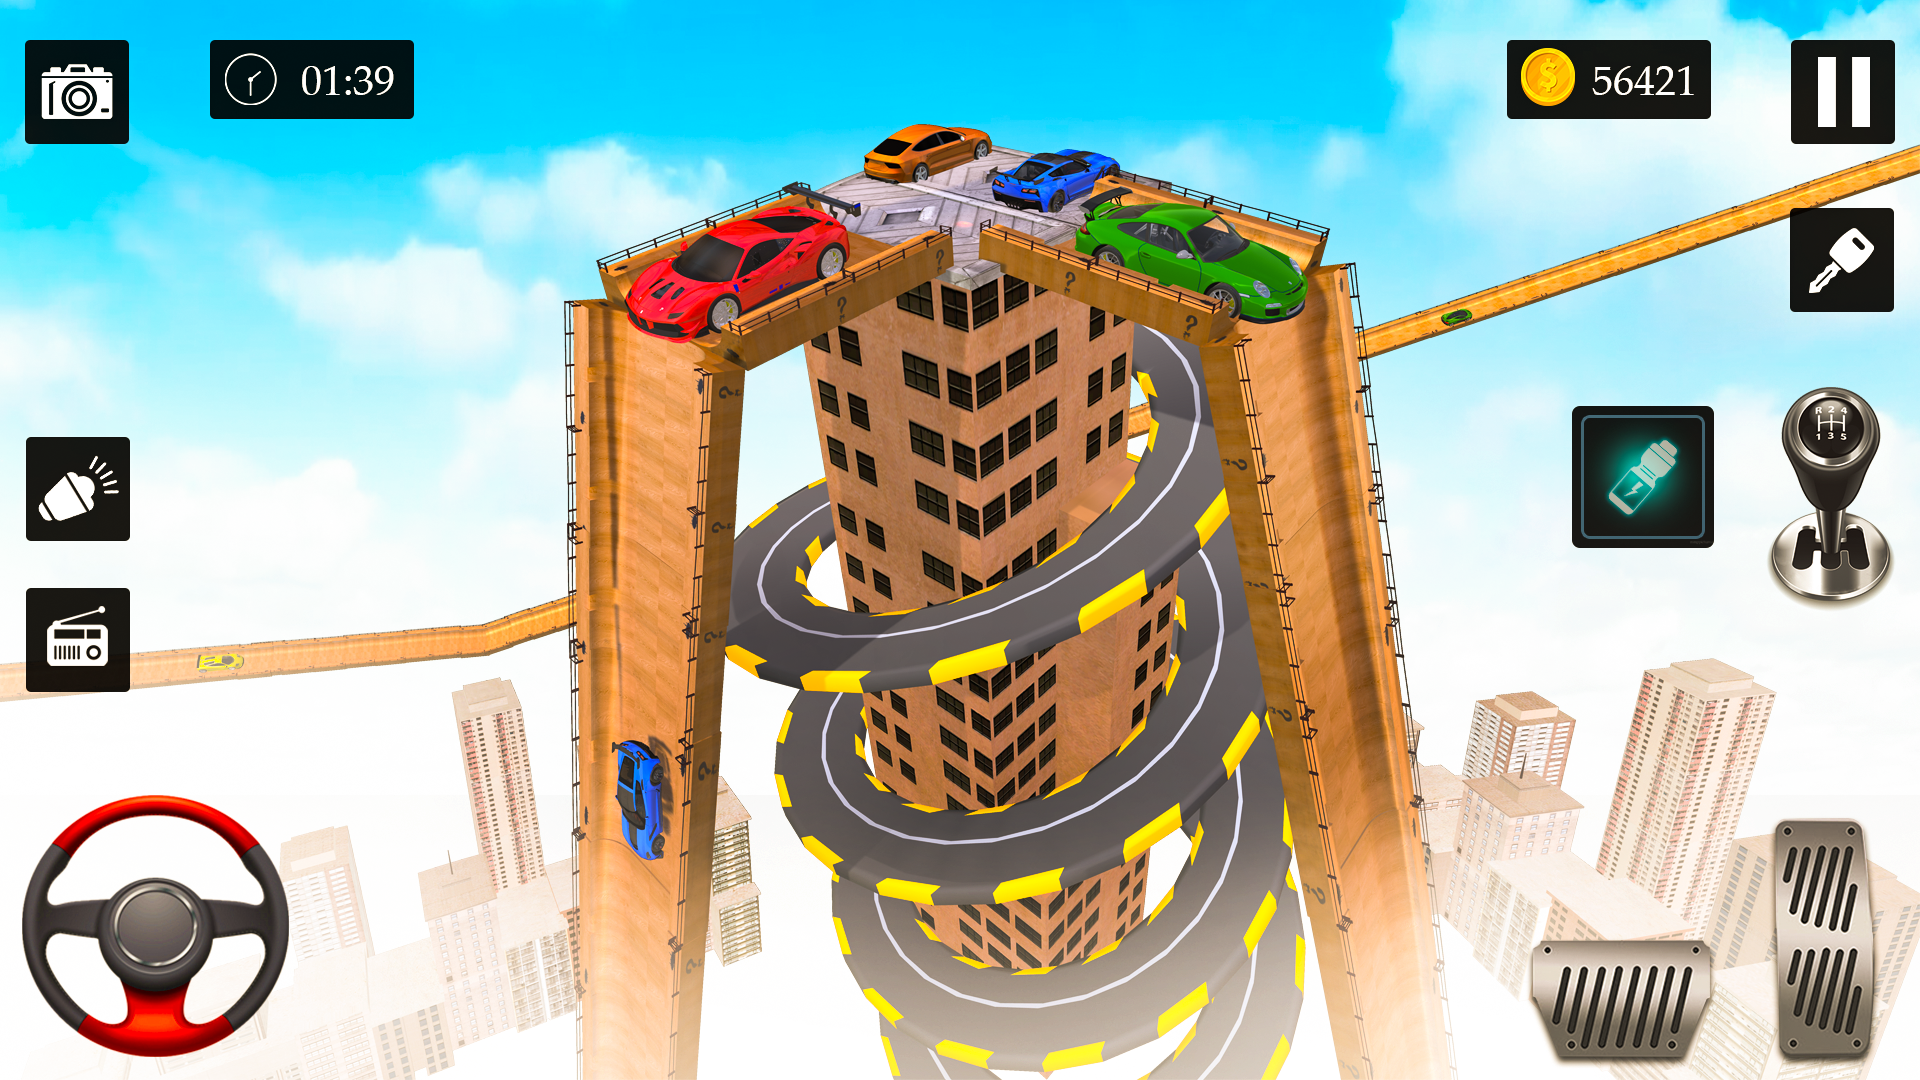 Screenshot 1 of Trò chơi đua xe mạo hiểm trên đường dốc 9.3.3